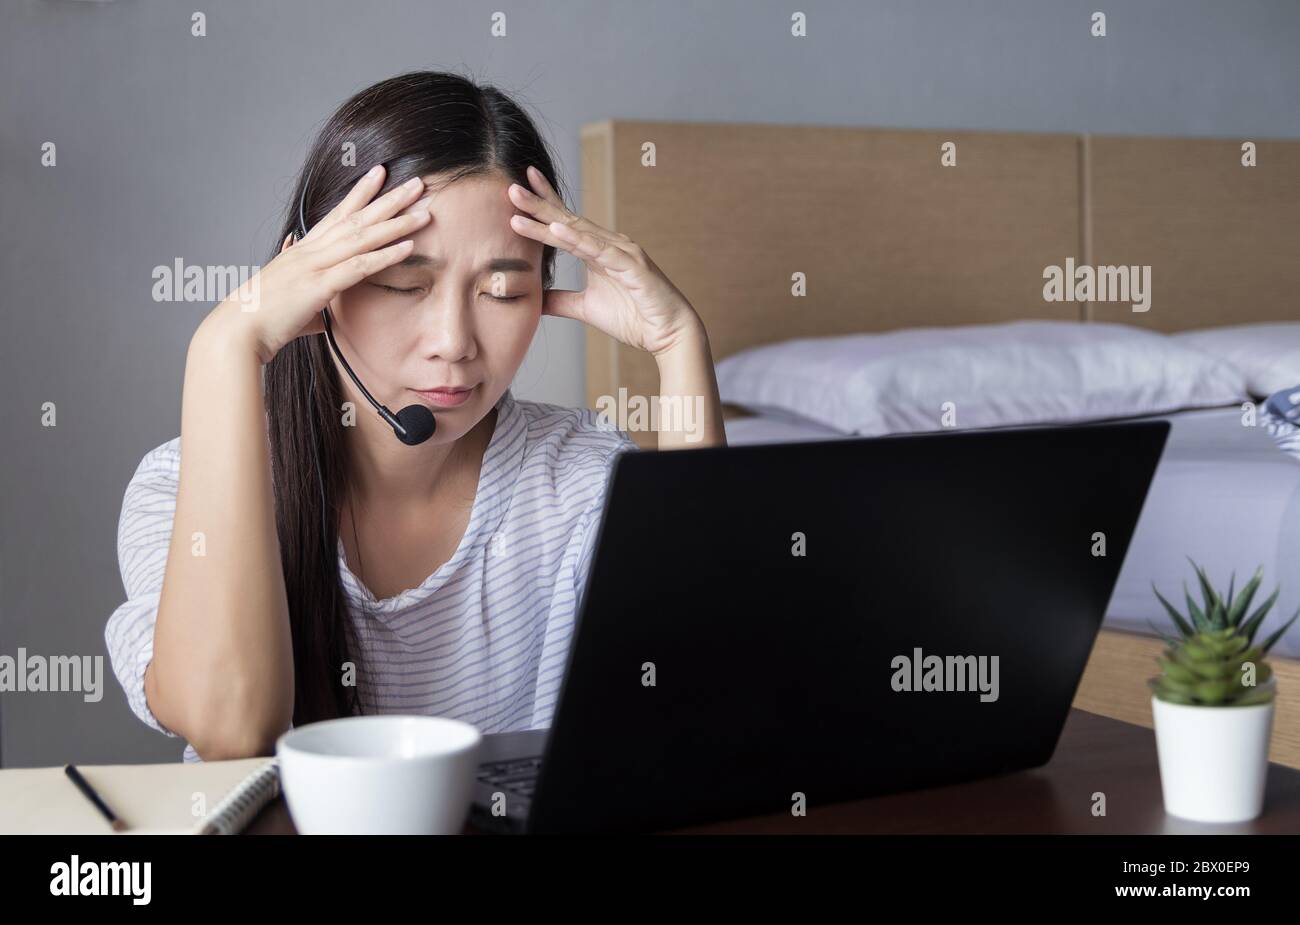 Asiatische Frau, die zu Hause mit einem Headset arbeitet, macht Videokonferenzen mit Kollegen über einen Laptop-Computer mit Stressgefühlen während der COVID-19-Übertragung Stockfoto